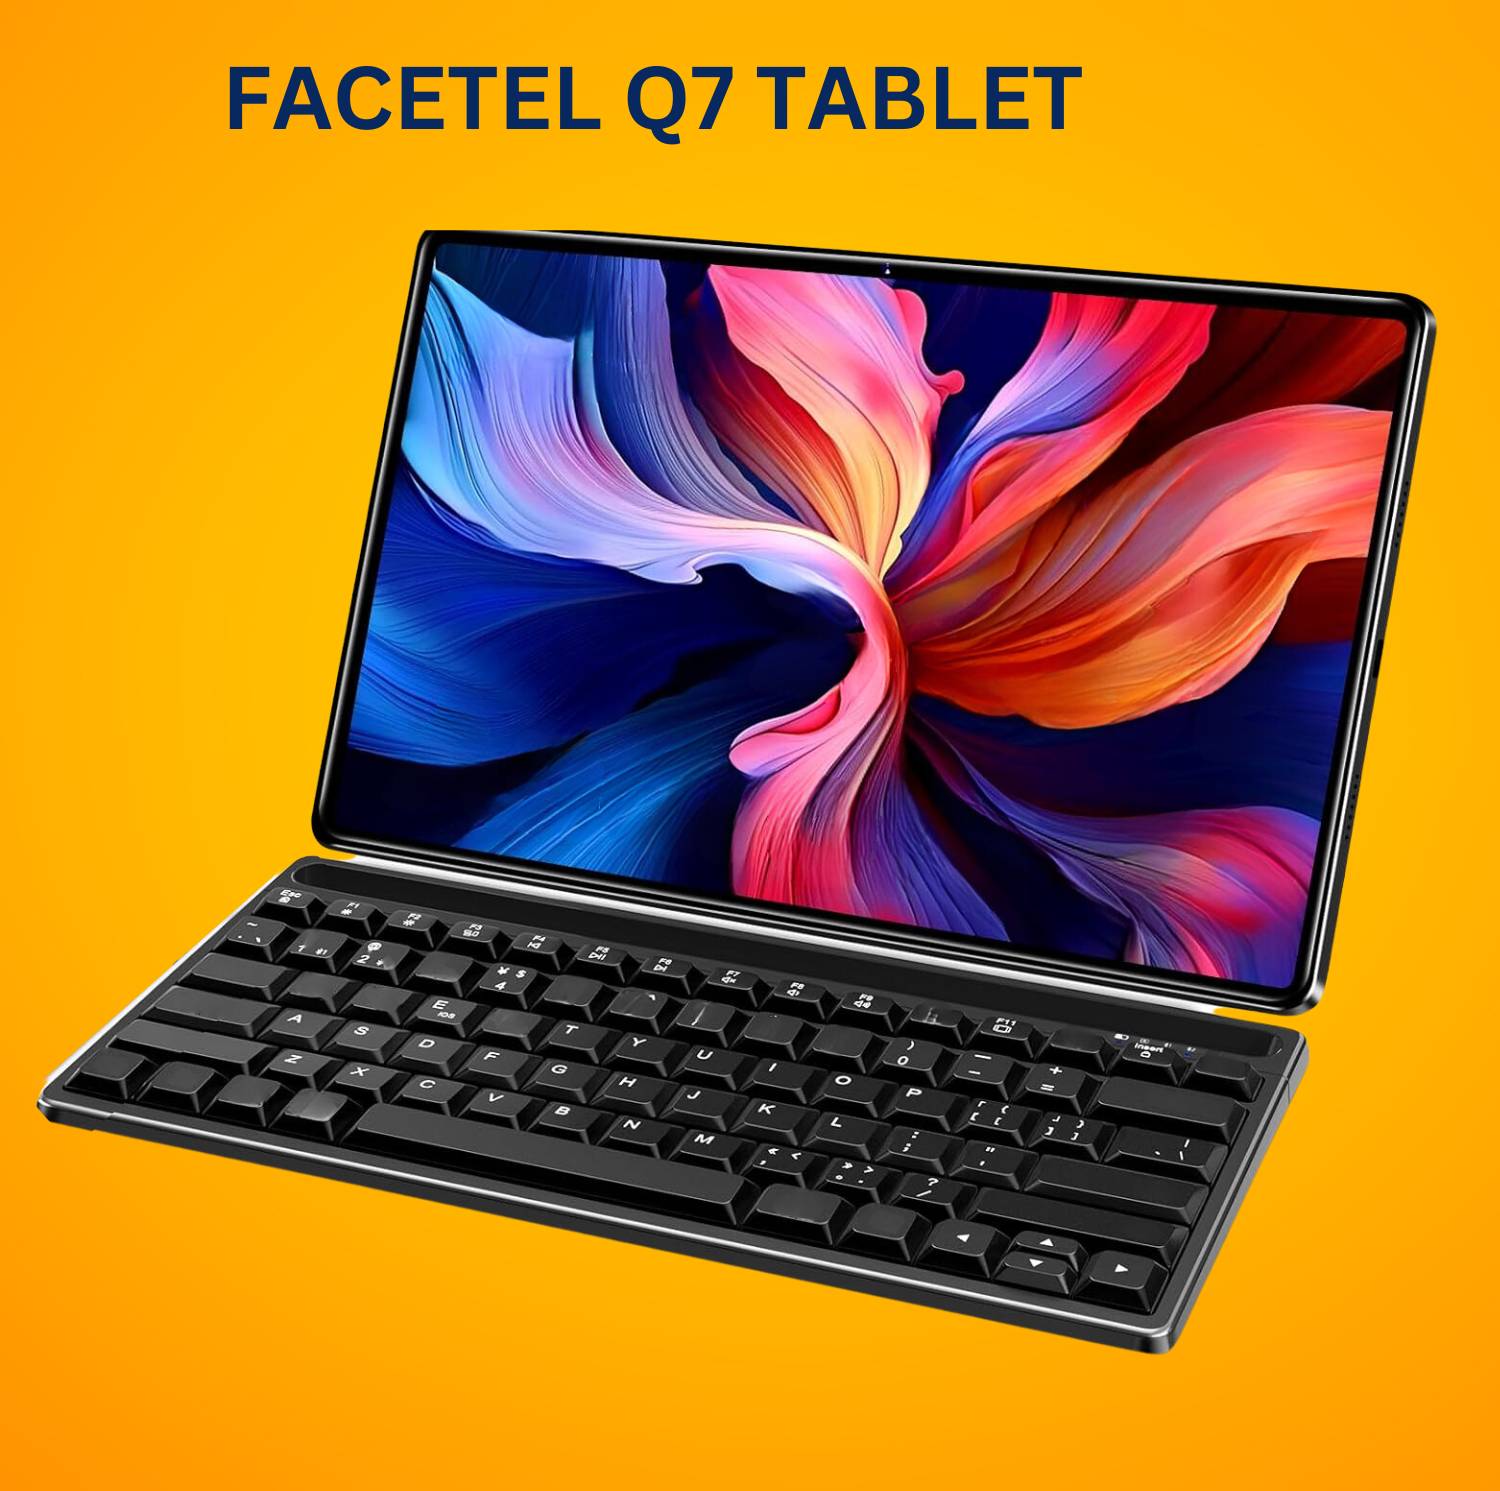 Facetel Q7 Tablet Review